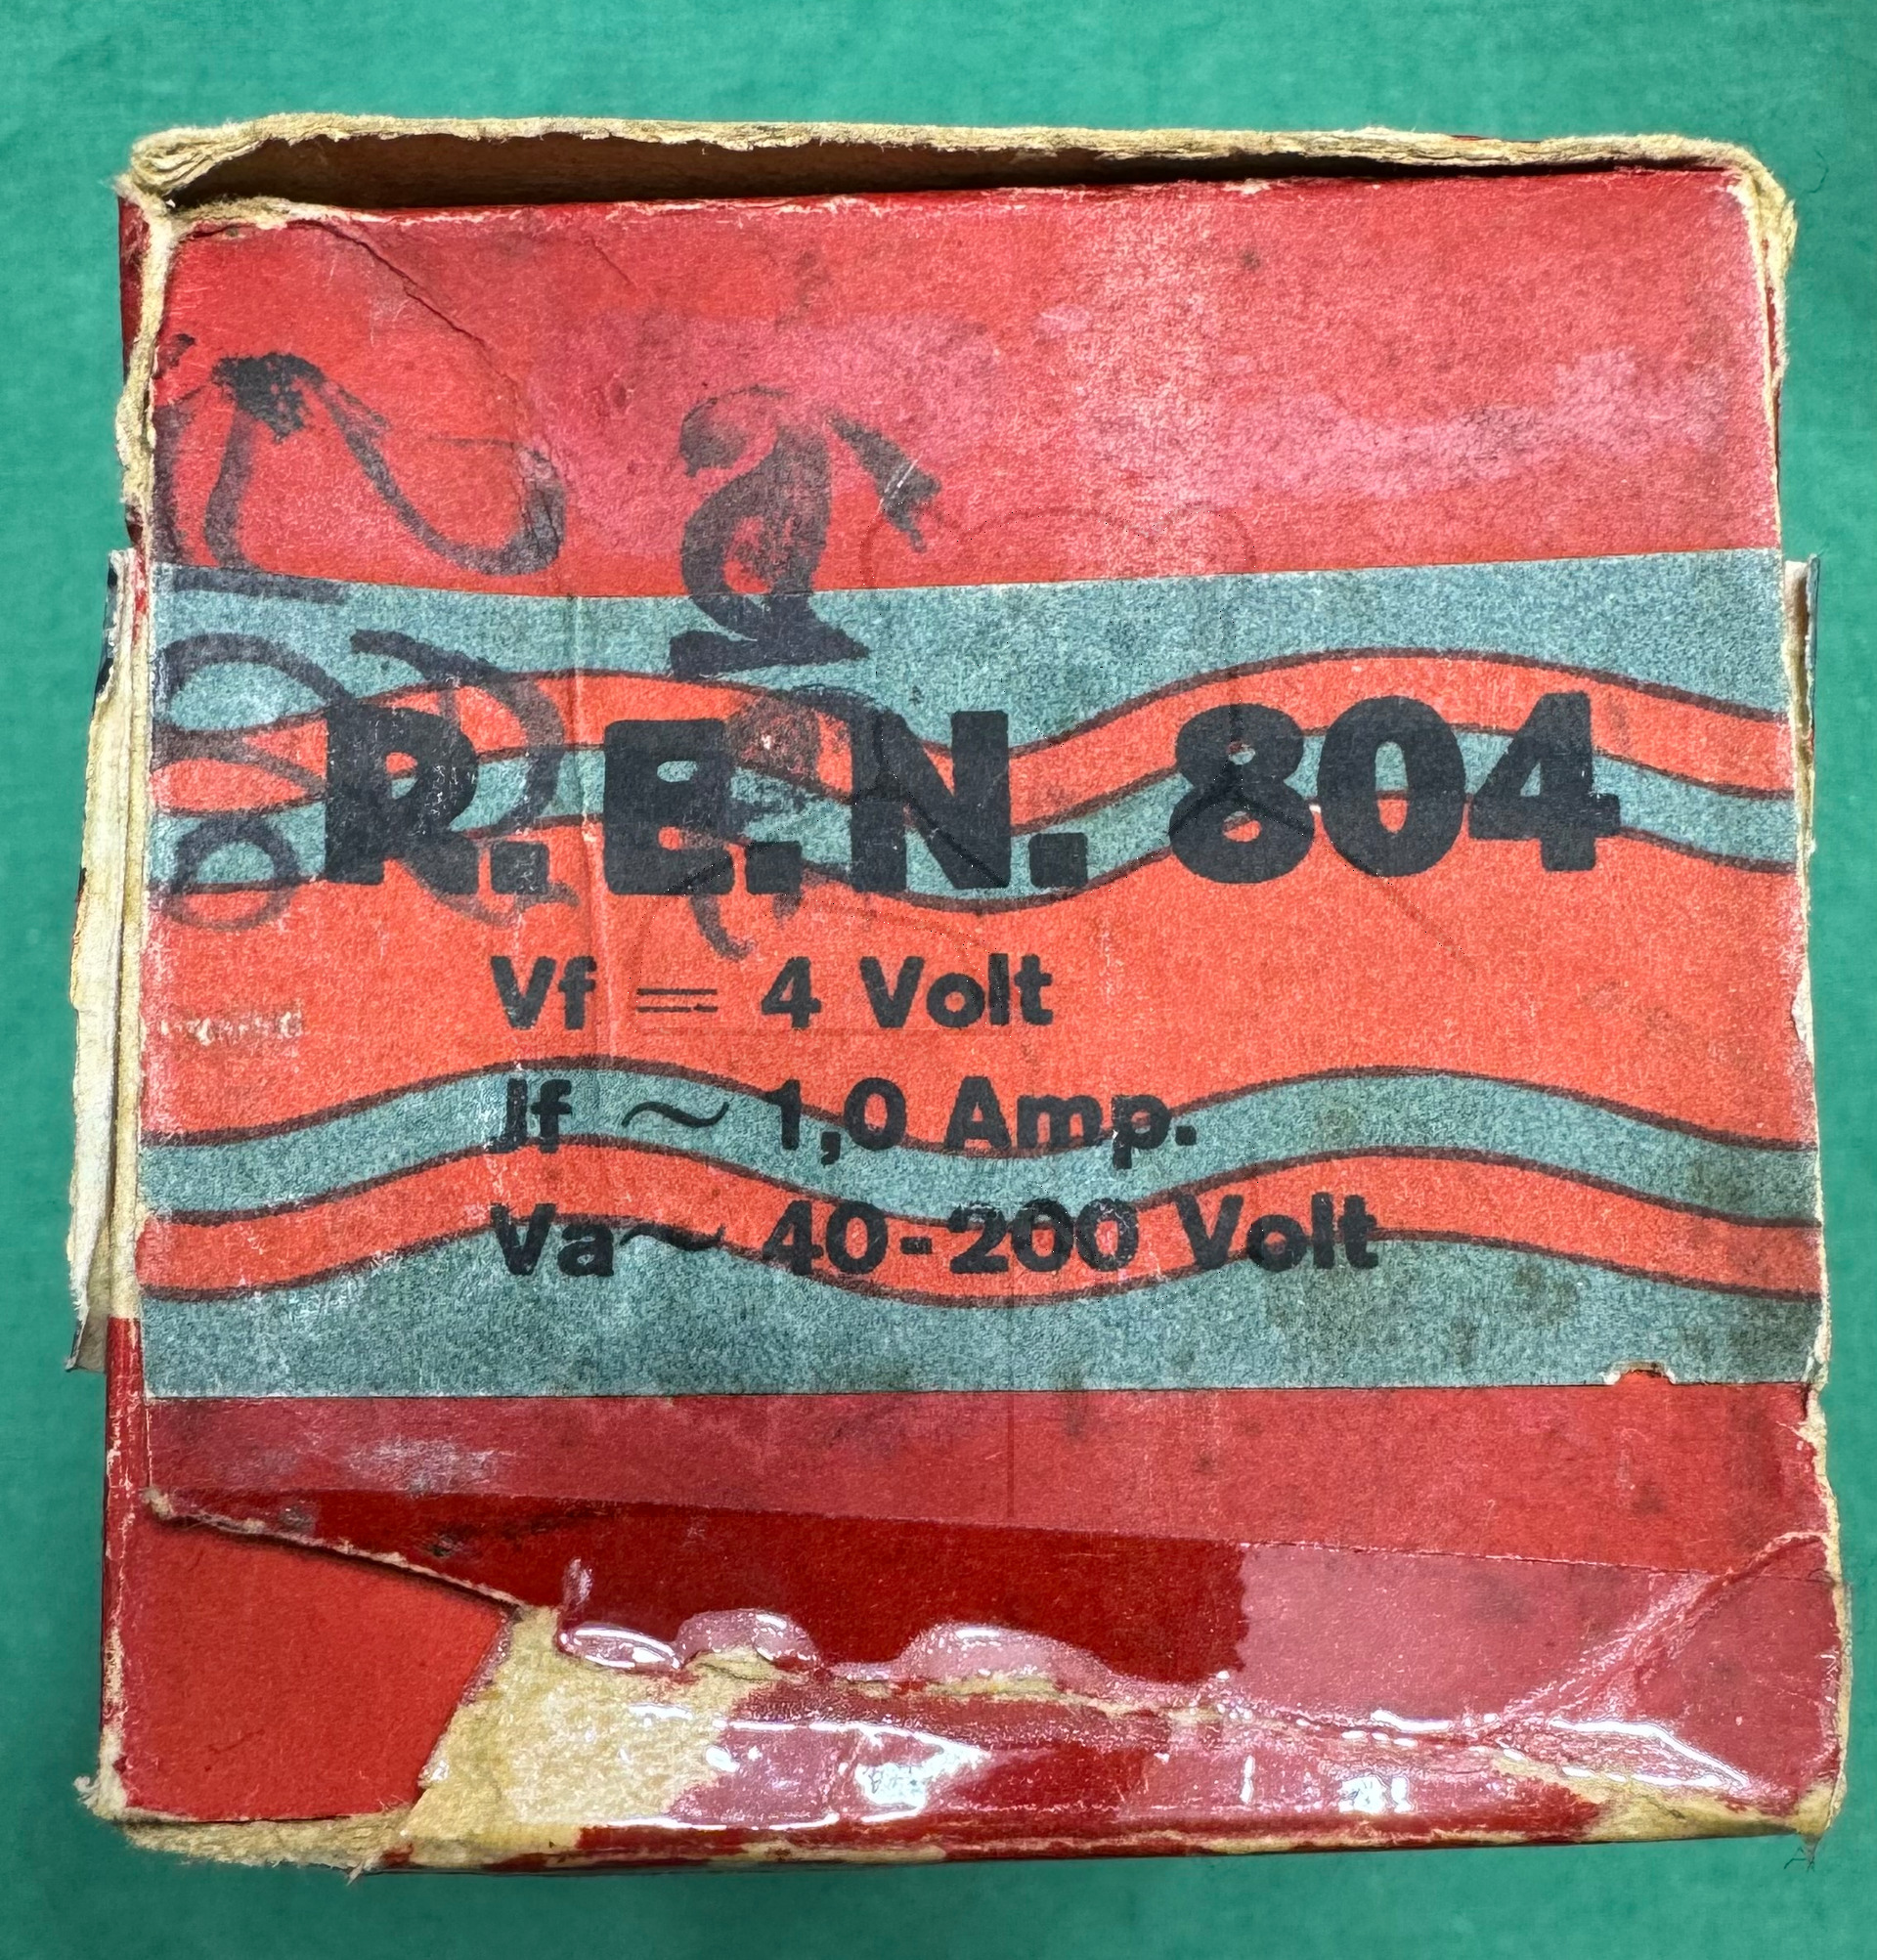 Röhre REN804 #6002 Verpackung Bild 5